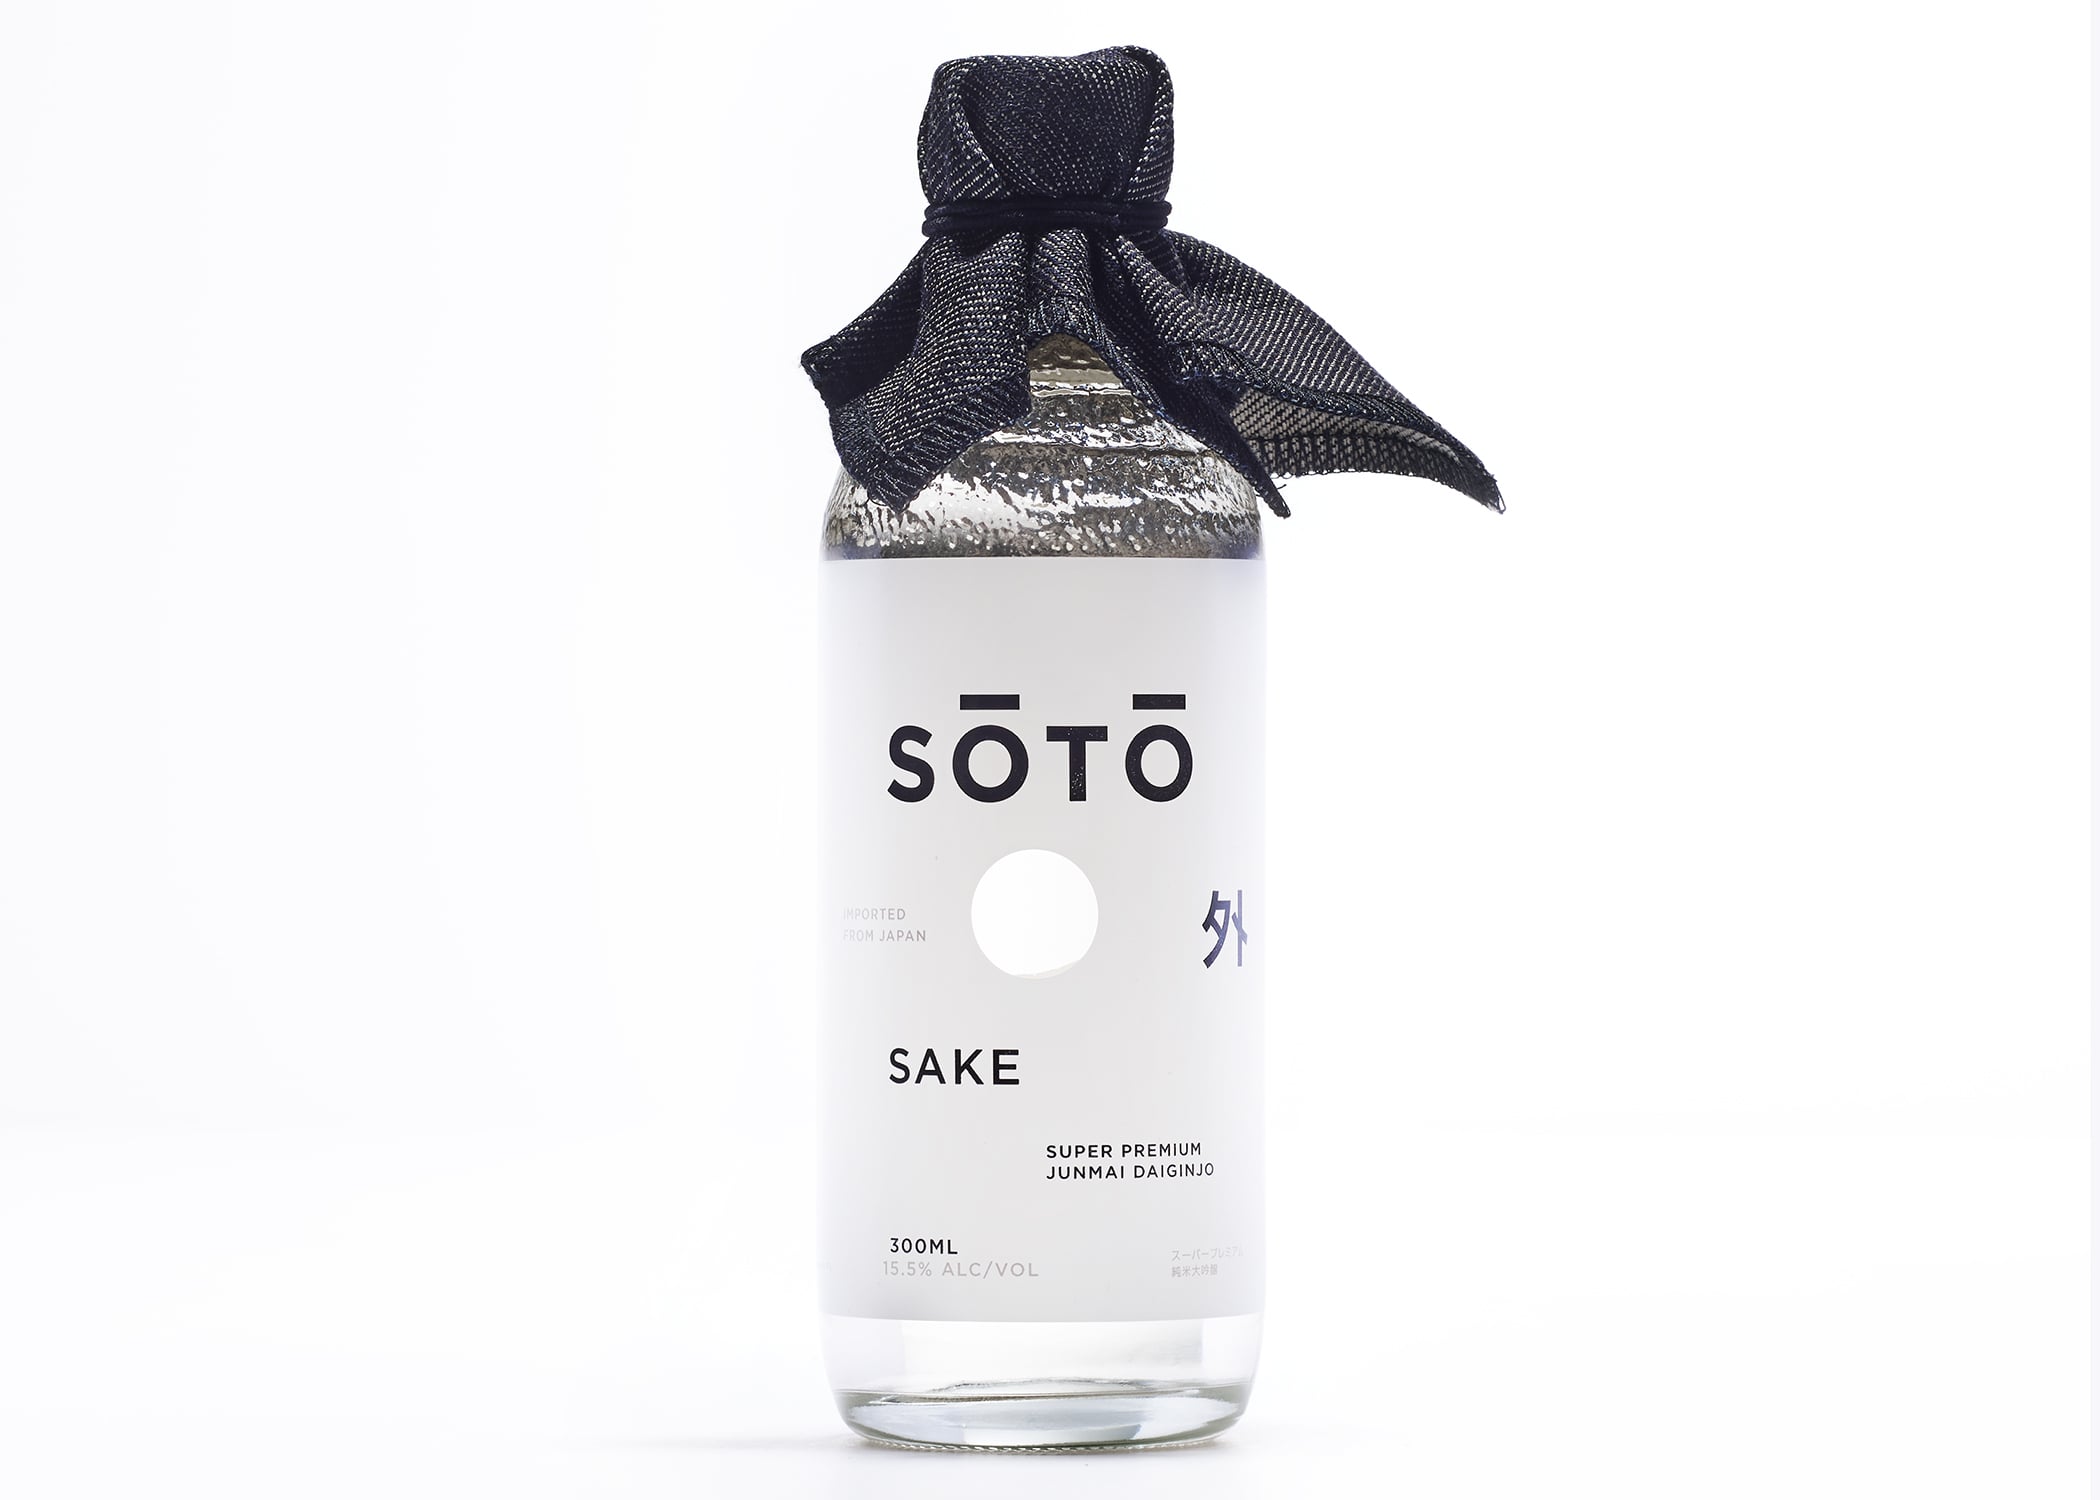 Soto Sake